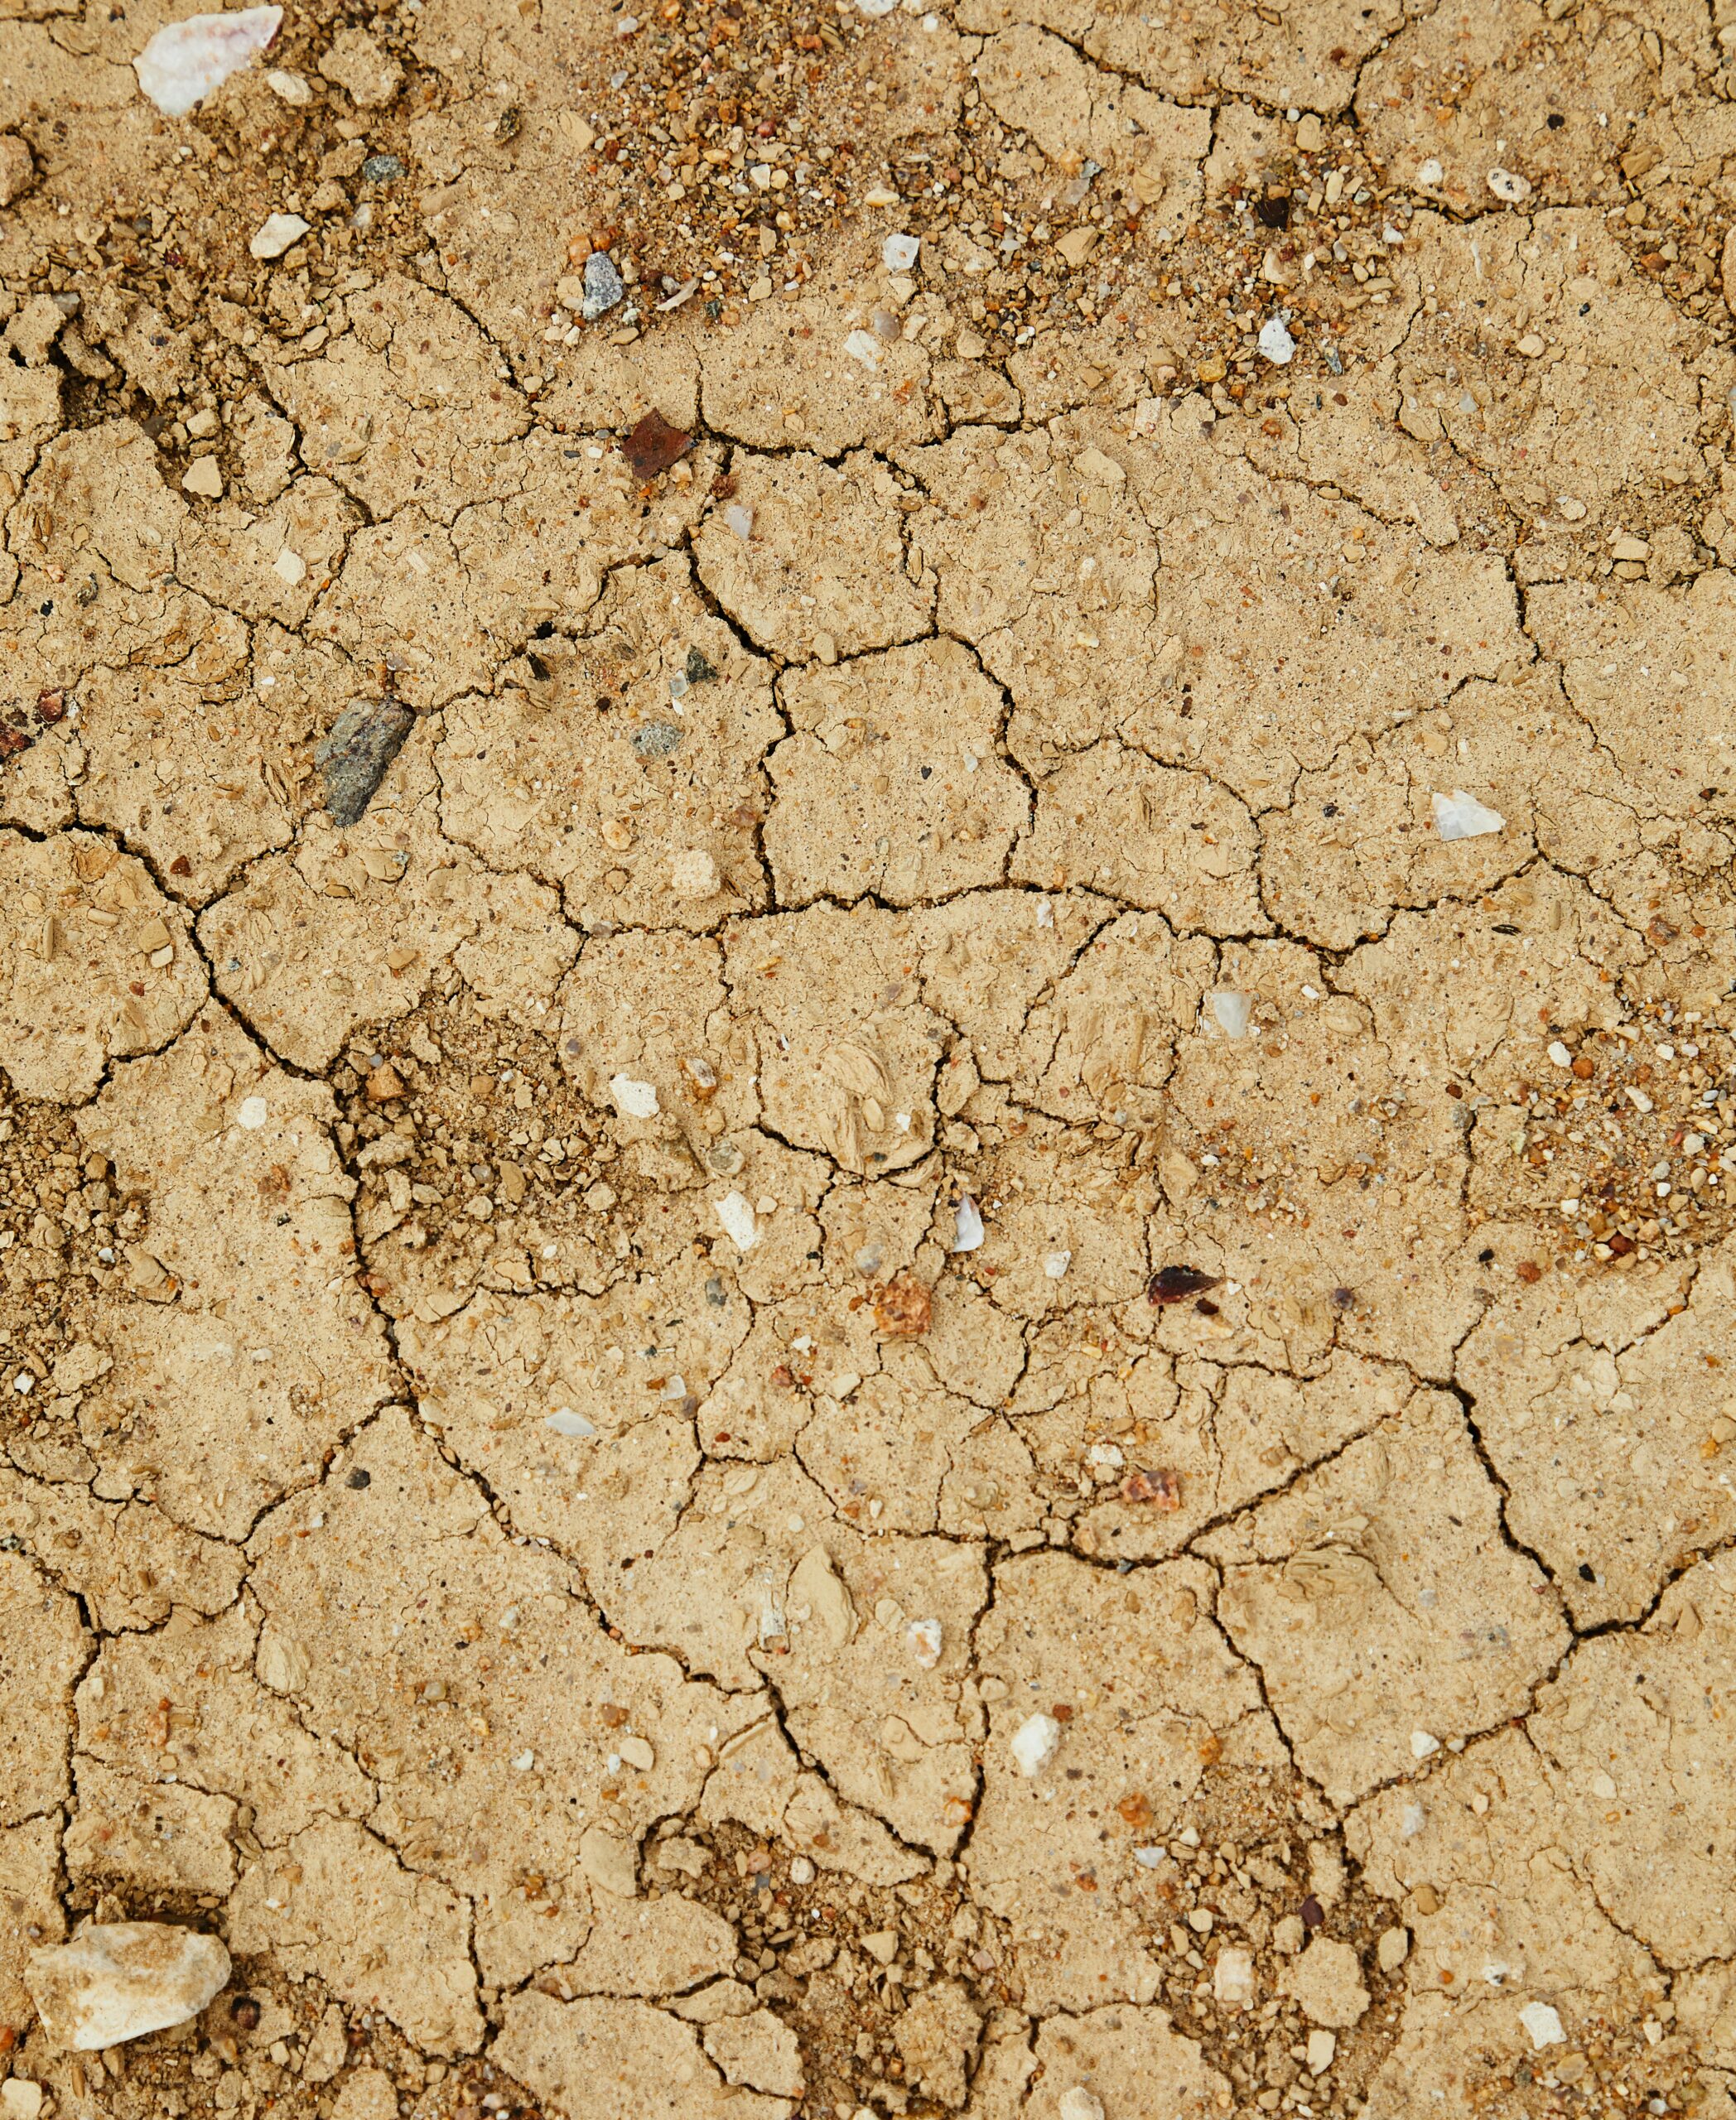 How drought affects livestock feeding by Mario Villarino